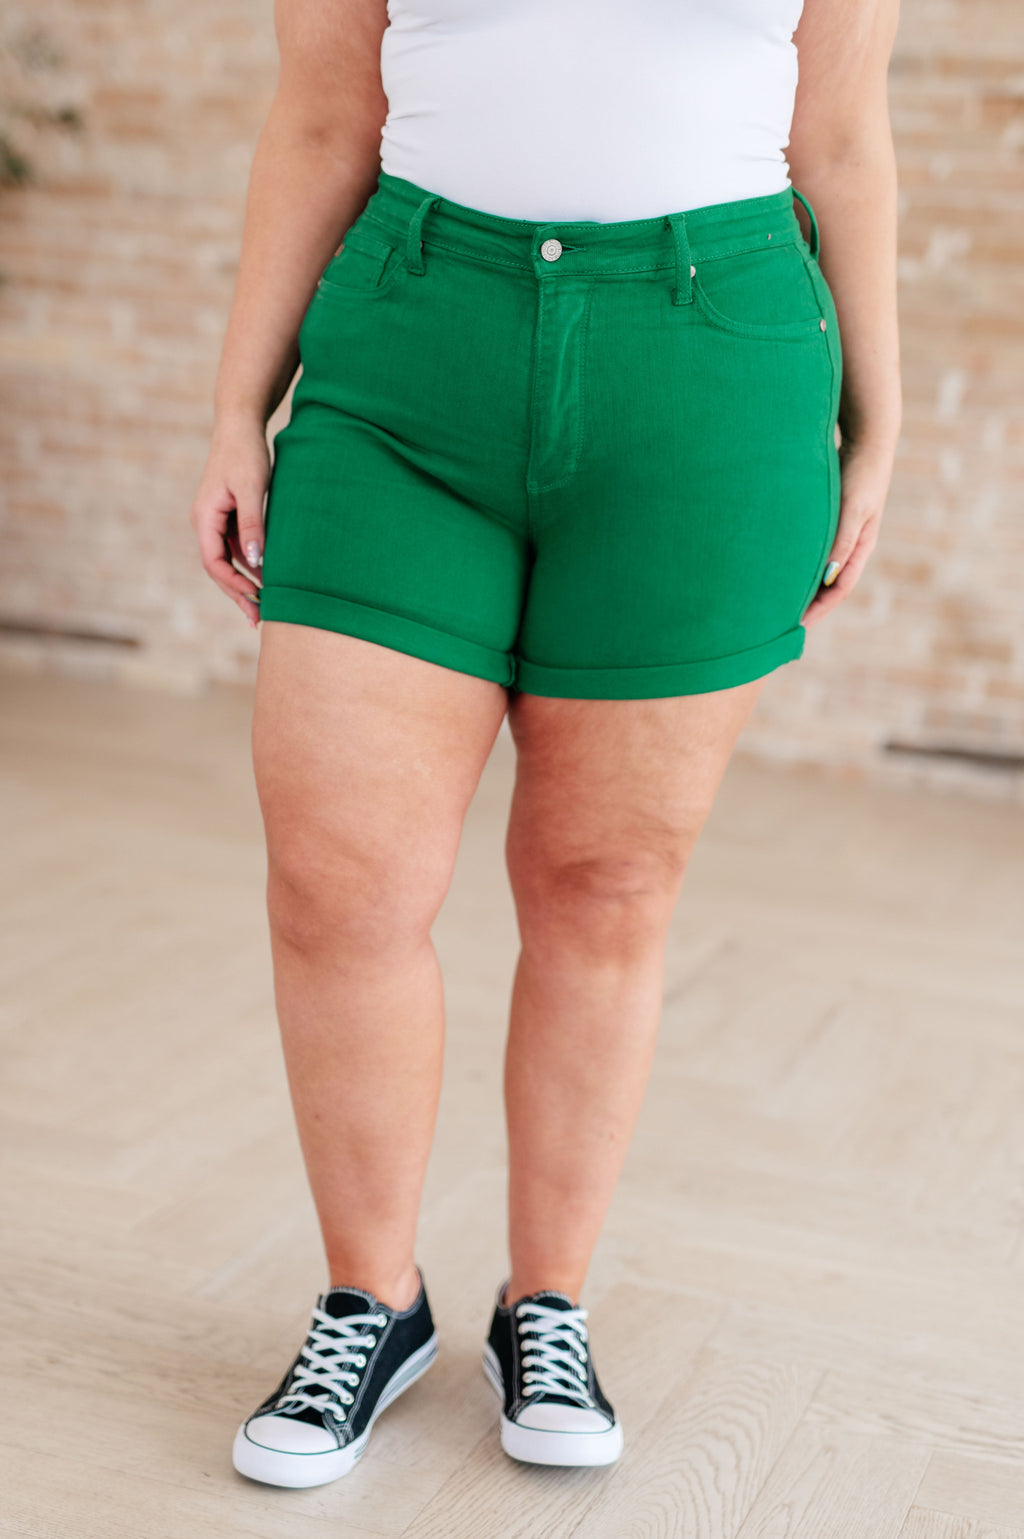 Judy Blue High Rise Tummy Control Cuffed Shorts in Garment Dyed Kelly Green